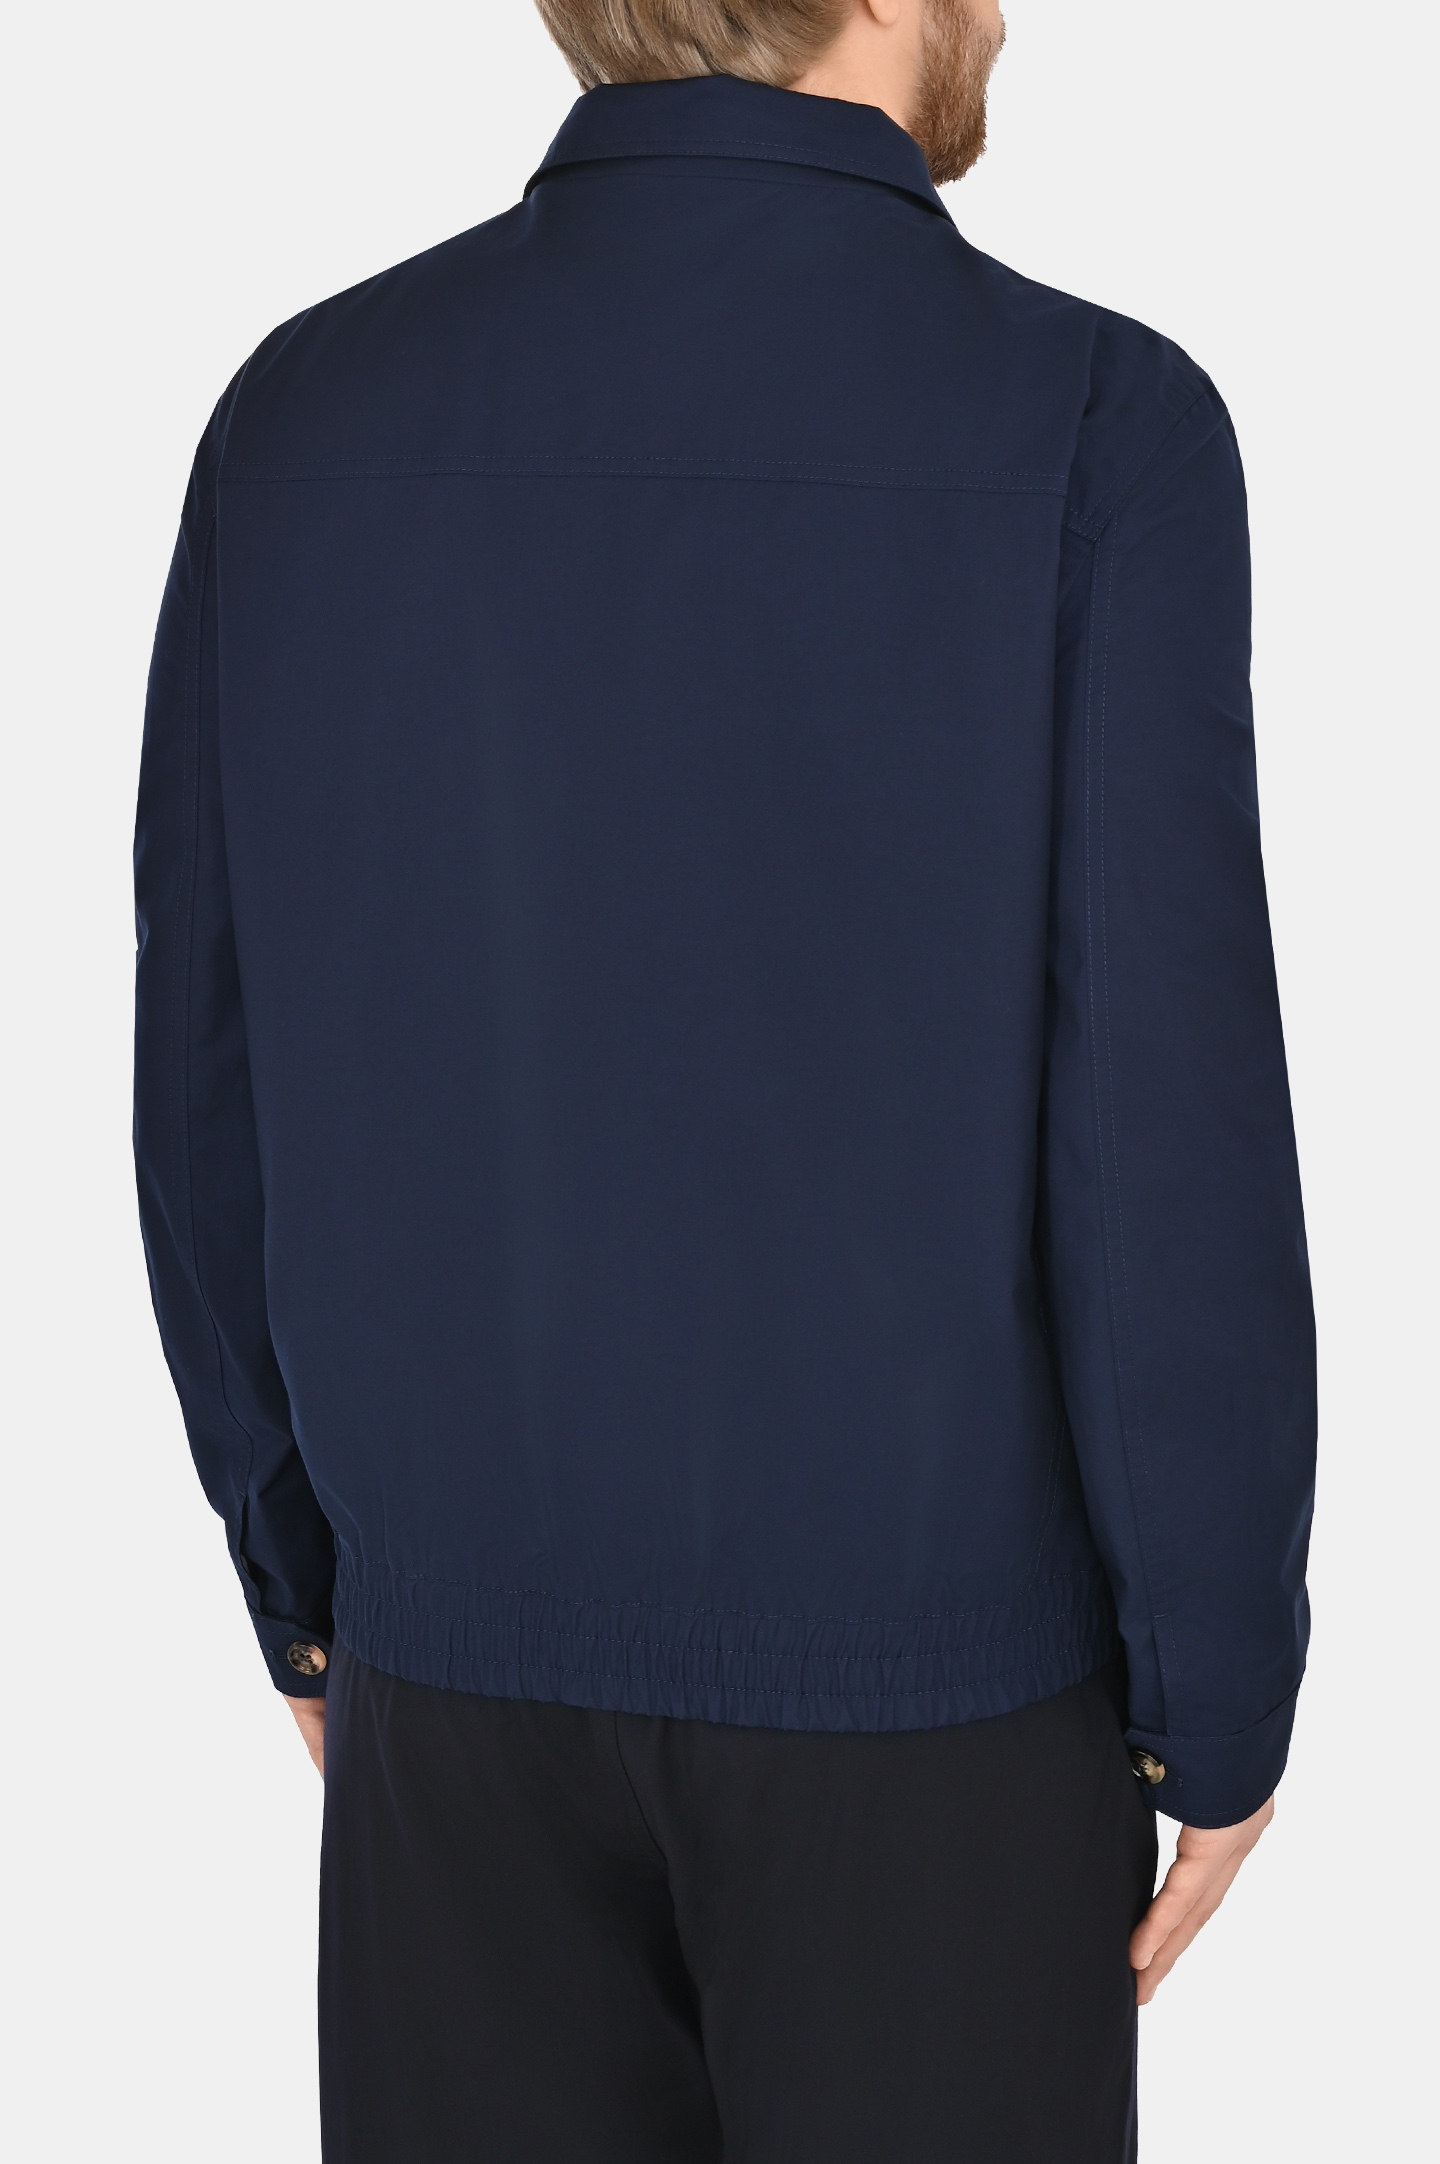 Легкая классическая куртка на молнии BRUNELLO  CUCINELLI MB4026205, цвет: Темно-синий, Мужской